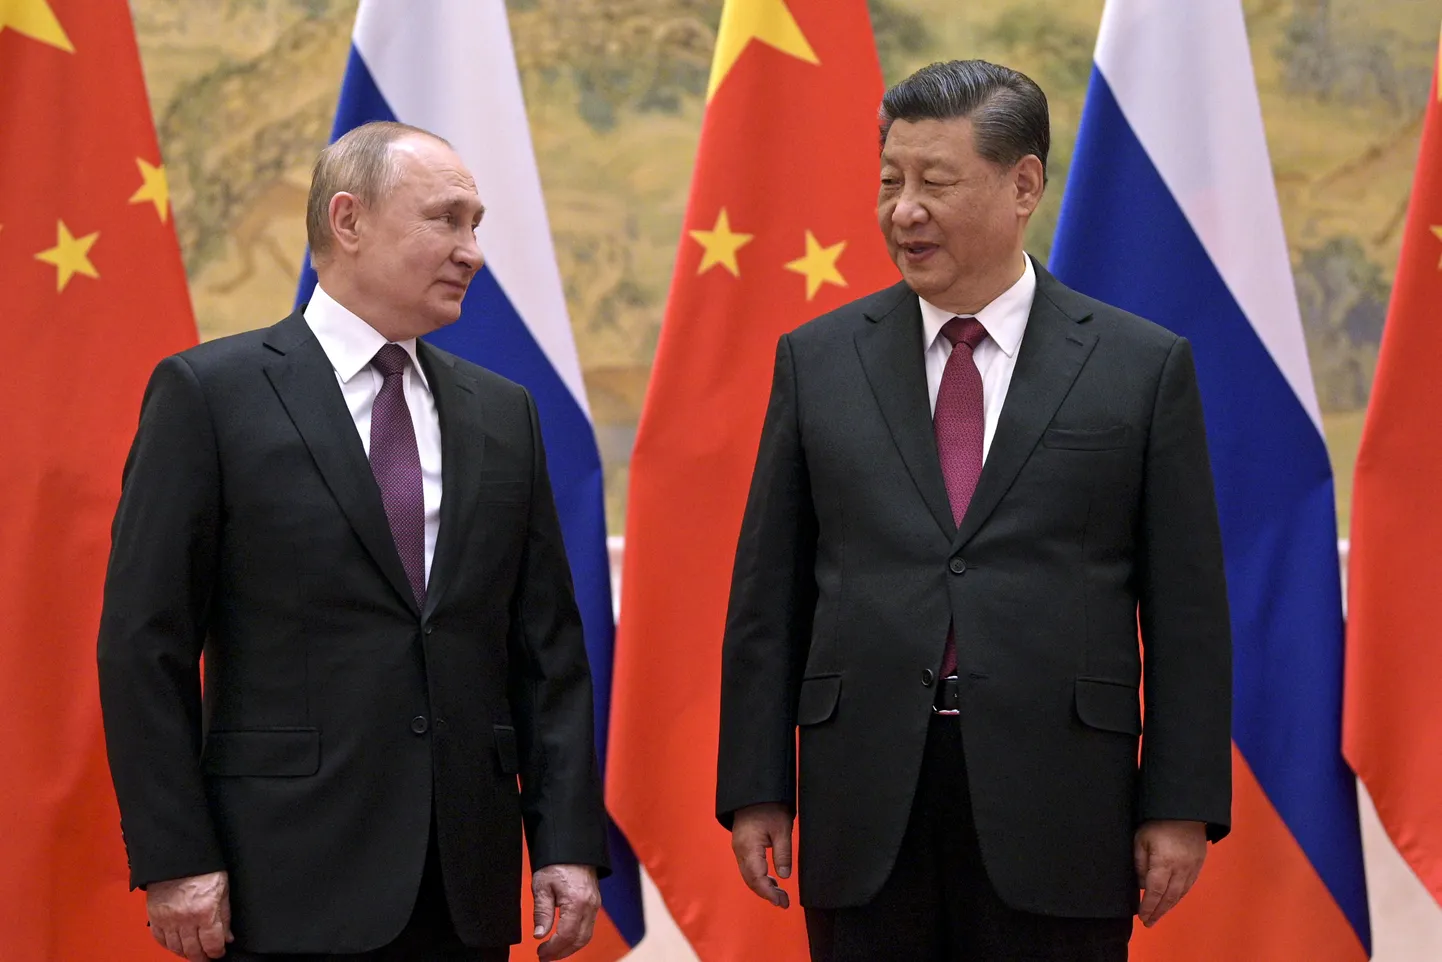 Hiina president Xi Jinping (paremal) ja Venemaa president Vladimir Putin kohtusid 4. veebruaril 2022 Pekingis. Venemaa algatas 24. veebruaril 2022 anastussõja Ukrainas. Hiina on Venemaa vana liitlane ja on üritanud jääda Venemaa suhtes neutraalseks